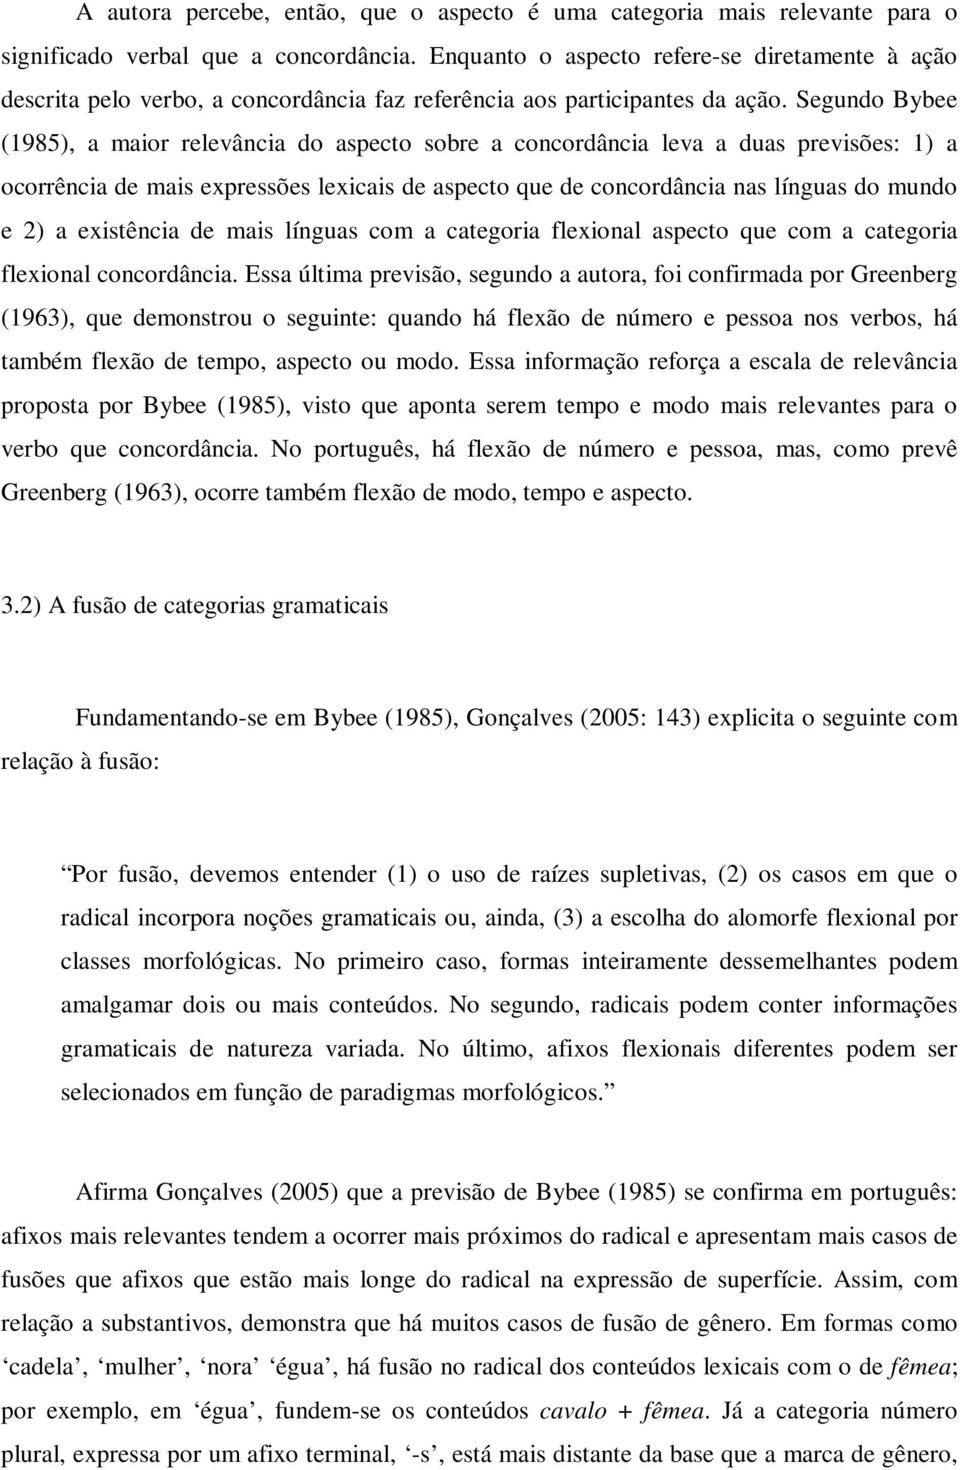 Segundo Bybee (1985), a maior relevância do aspecto sobre a concordância leva a duas previsões: 1) a ocorrência de mais expressões lexicais de aspecto que de concordância nas línguas do mundo e 2) a